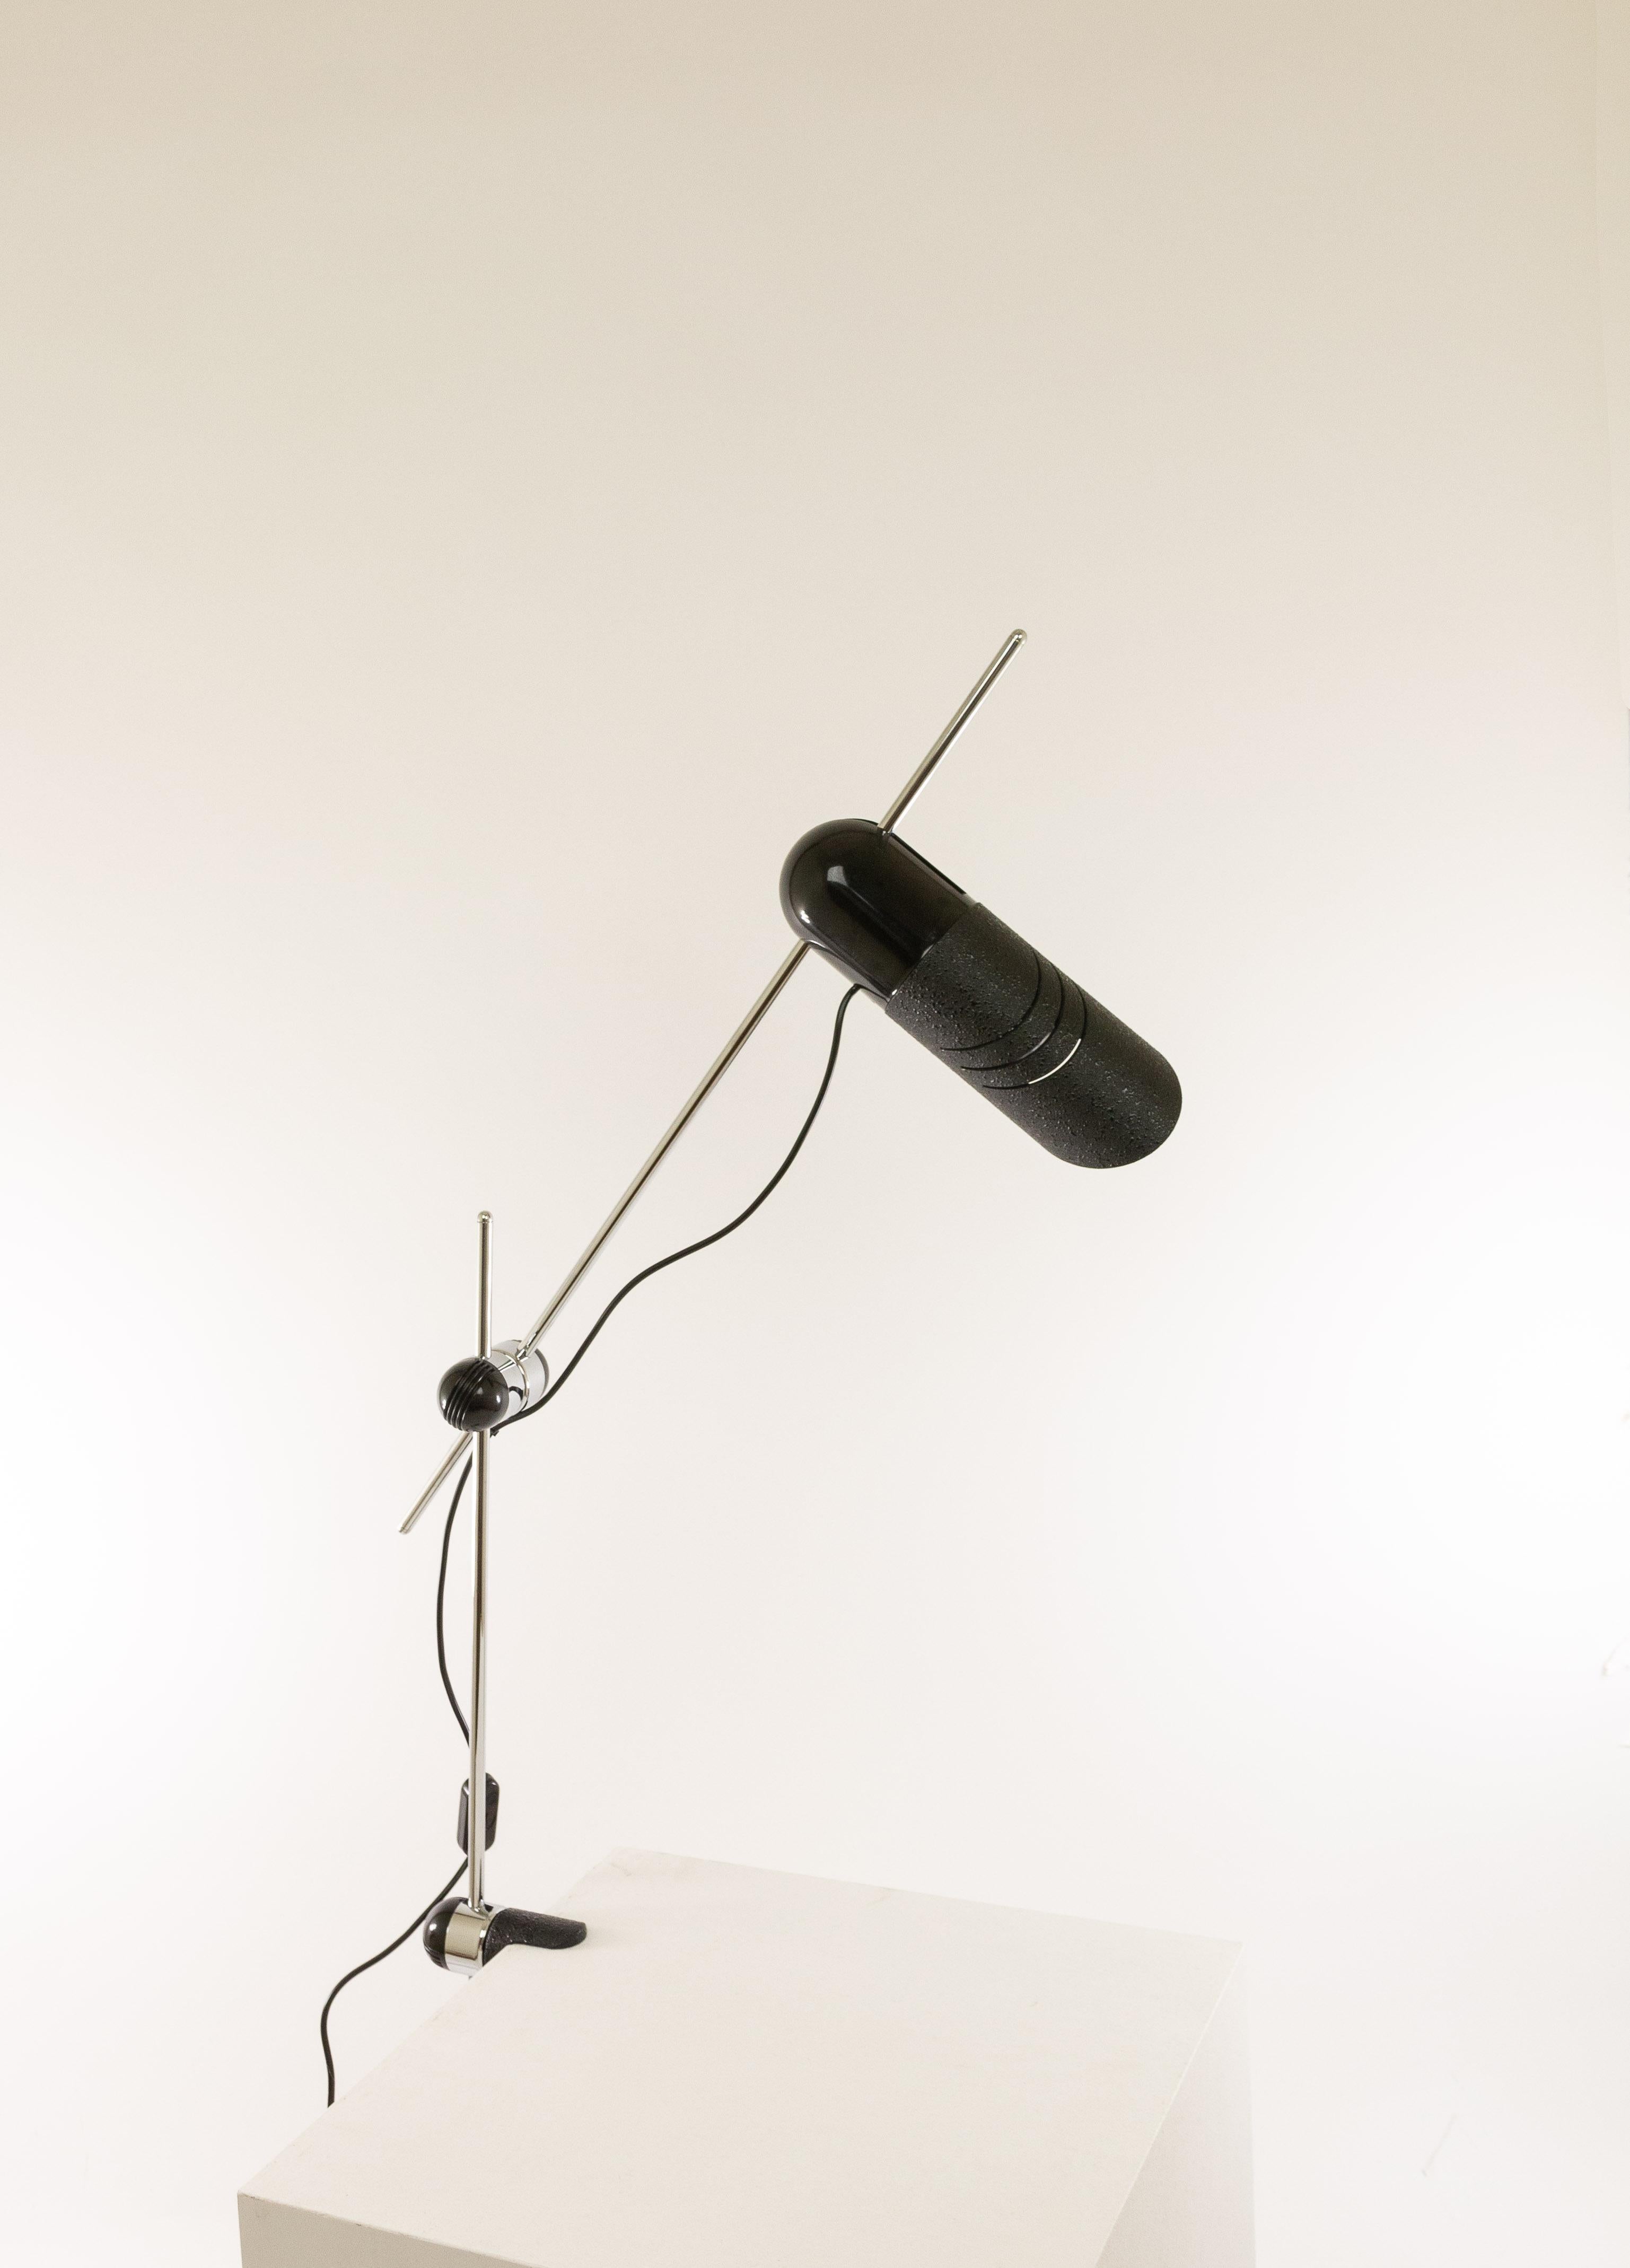 La lampe de table Galdino a été conçue par Carlo Urbinati pour Harvey Guzzini en 1972.

Galdino a été produit en plusieurs versions : une lampe de table, une applique et un lampadaire (avec un et deux spots). Il s'agit de la rare lampe à pince qui